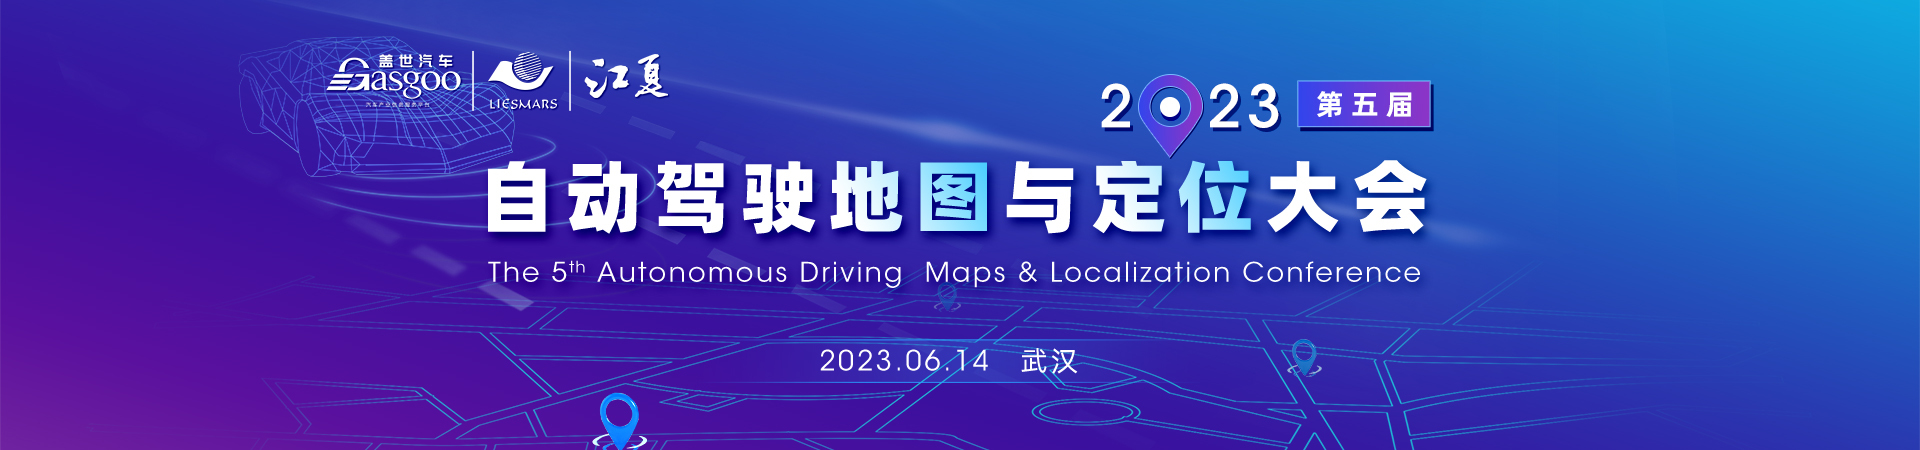 盖世汽车2023第五届自动驾驶地图与定位大会